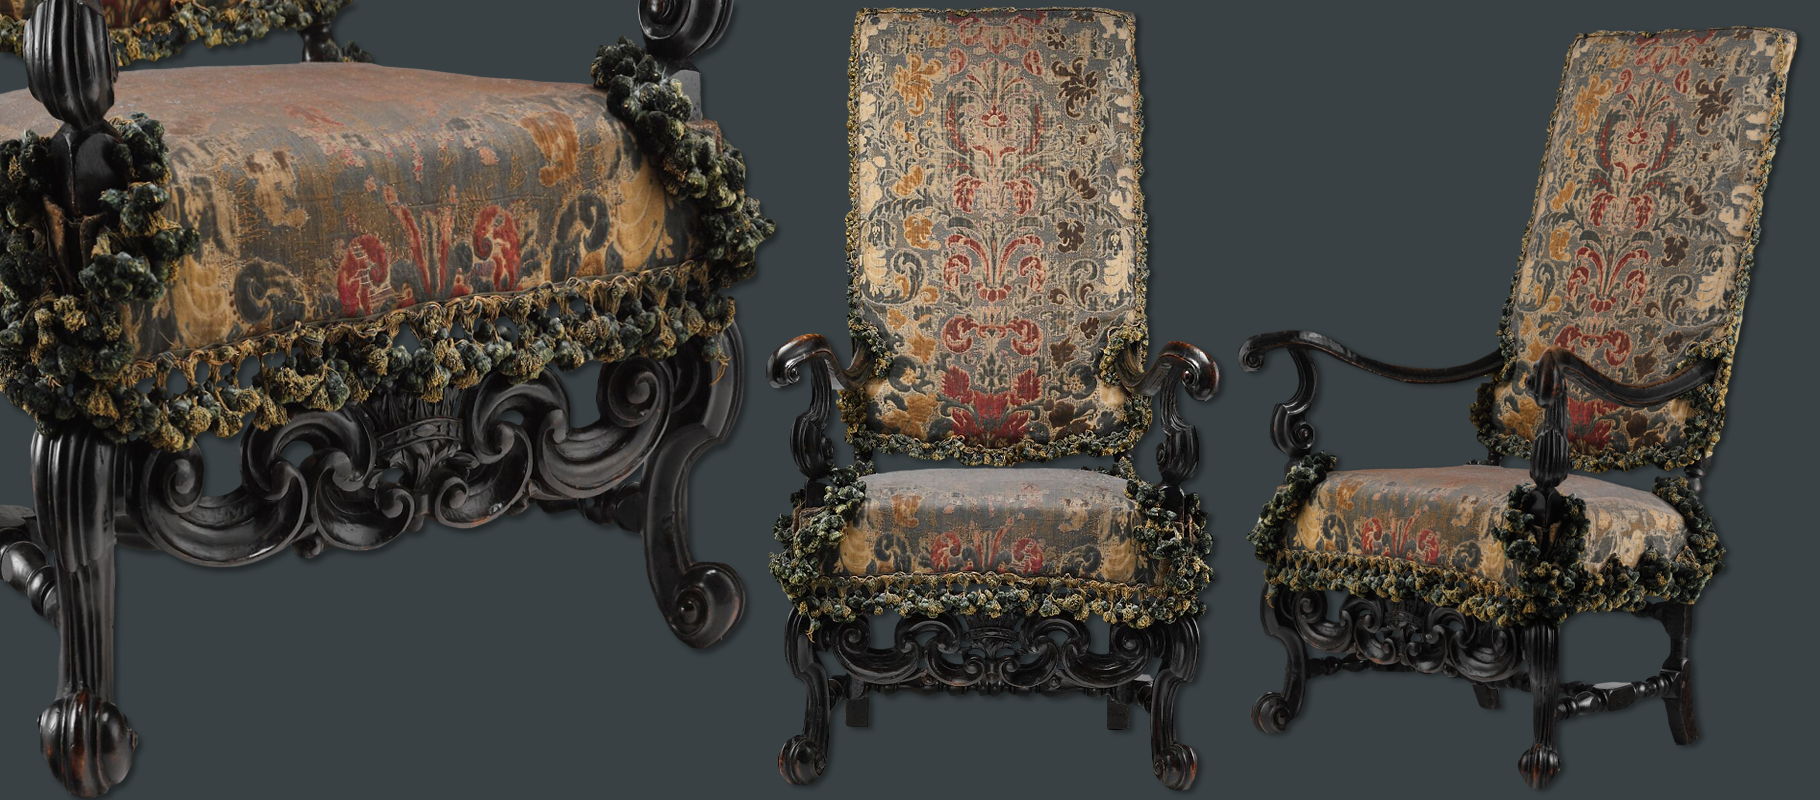 17th century marot style armchair